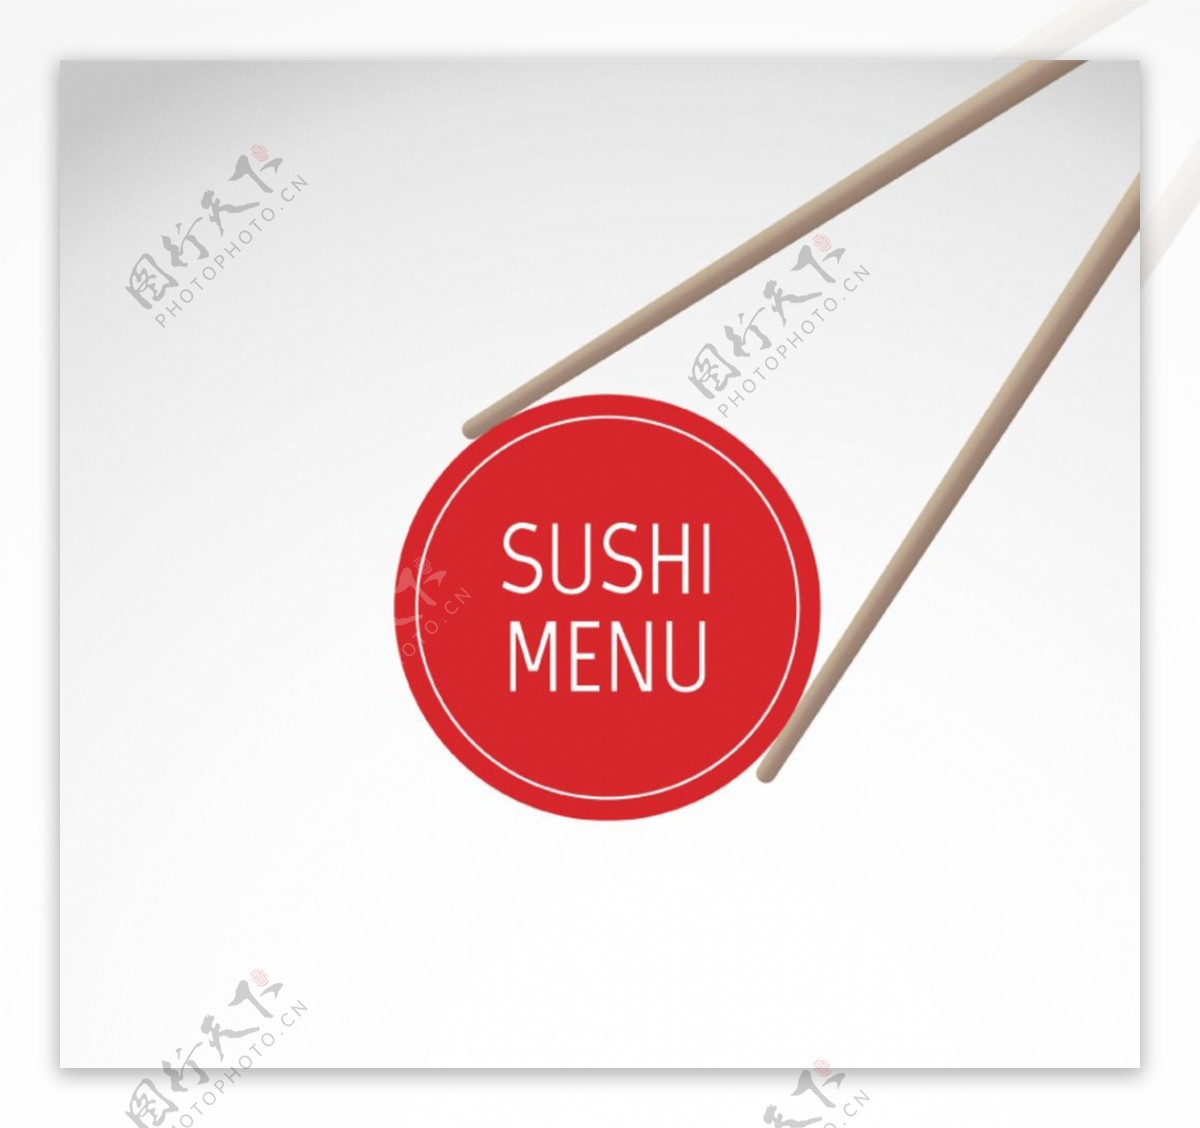 创意夹寿司菜单设计矢量素材